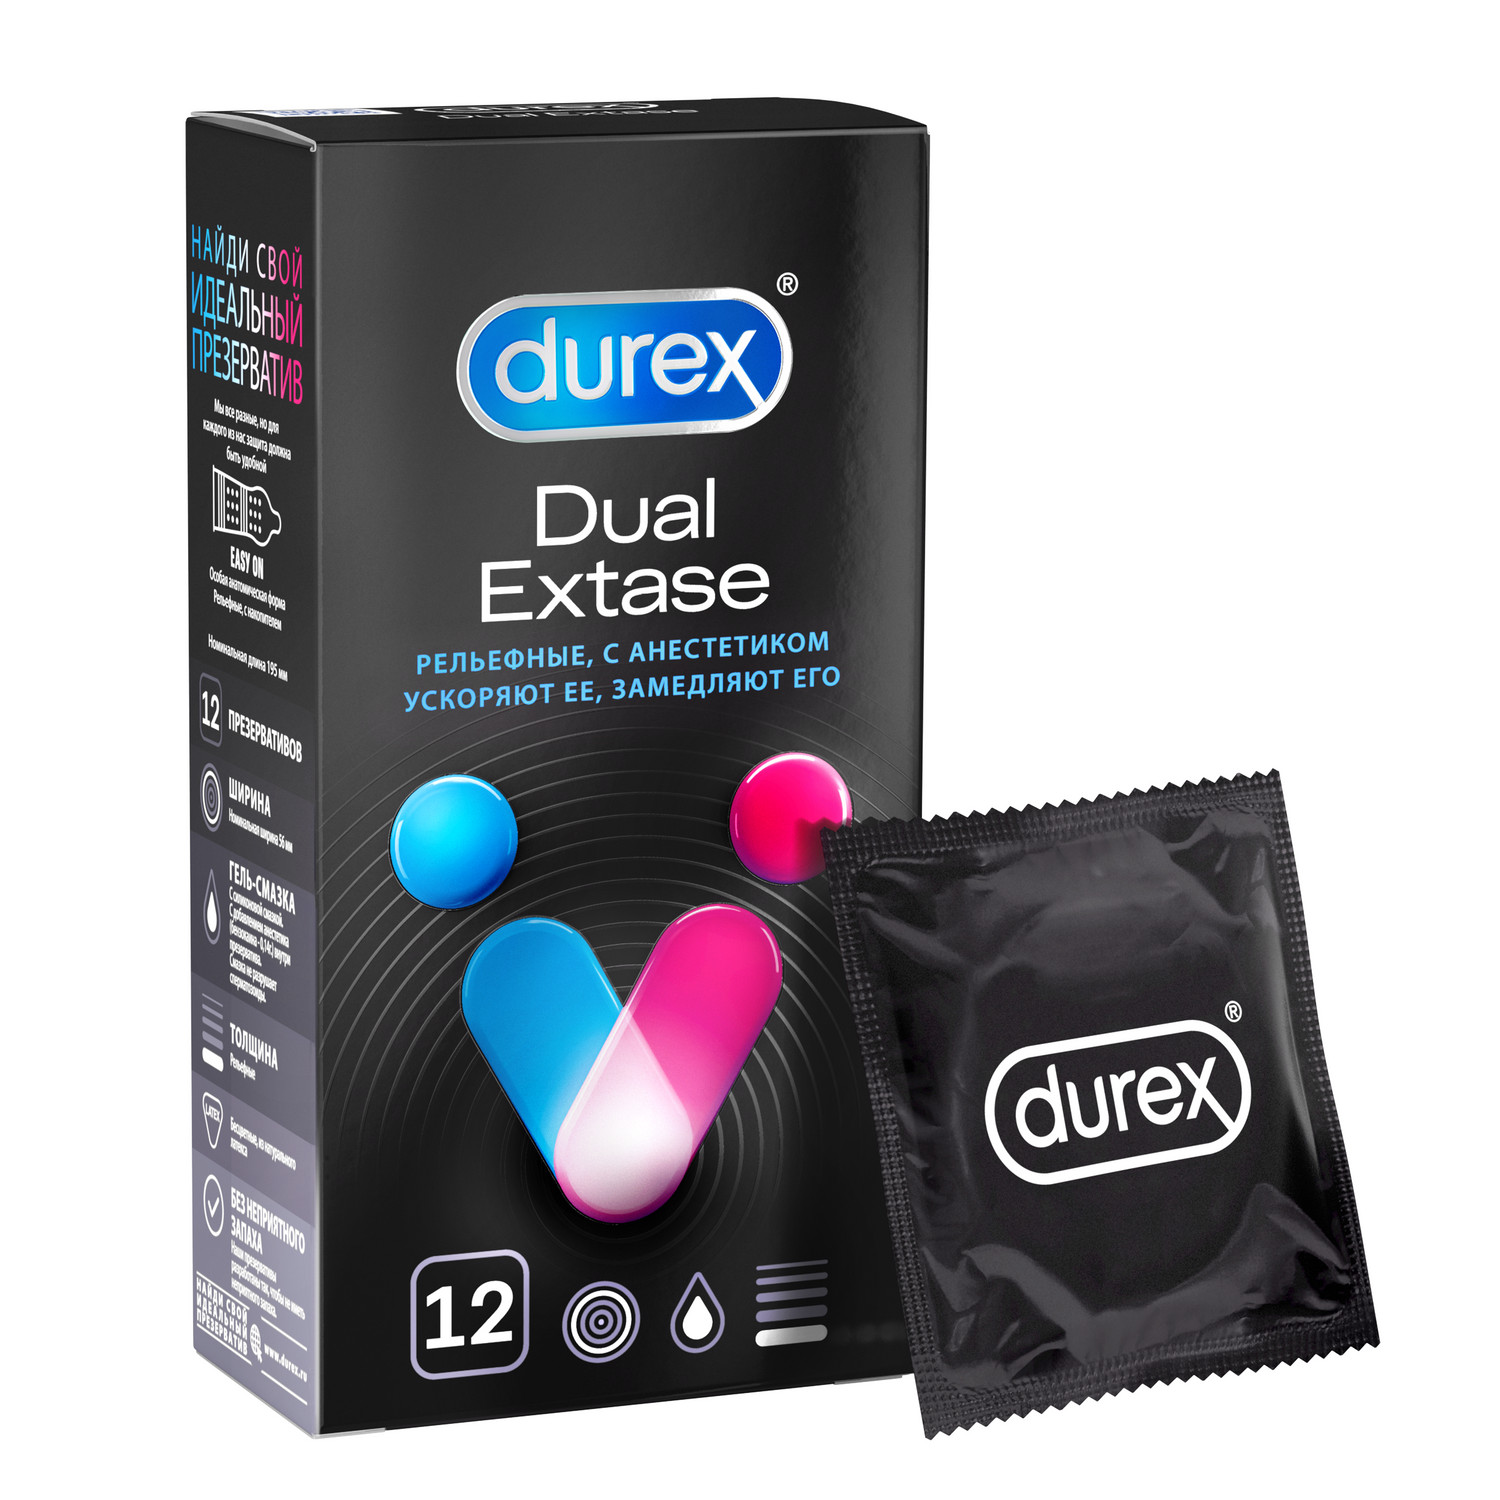 Дюрекс презервативы Дуал Экстаз №12